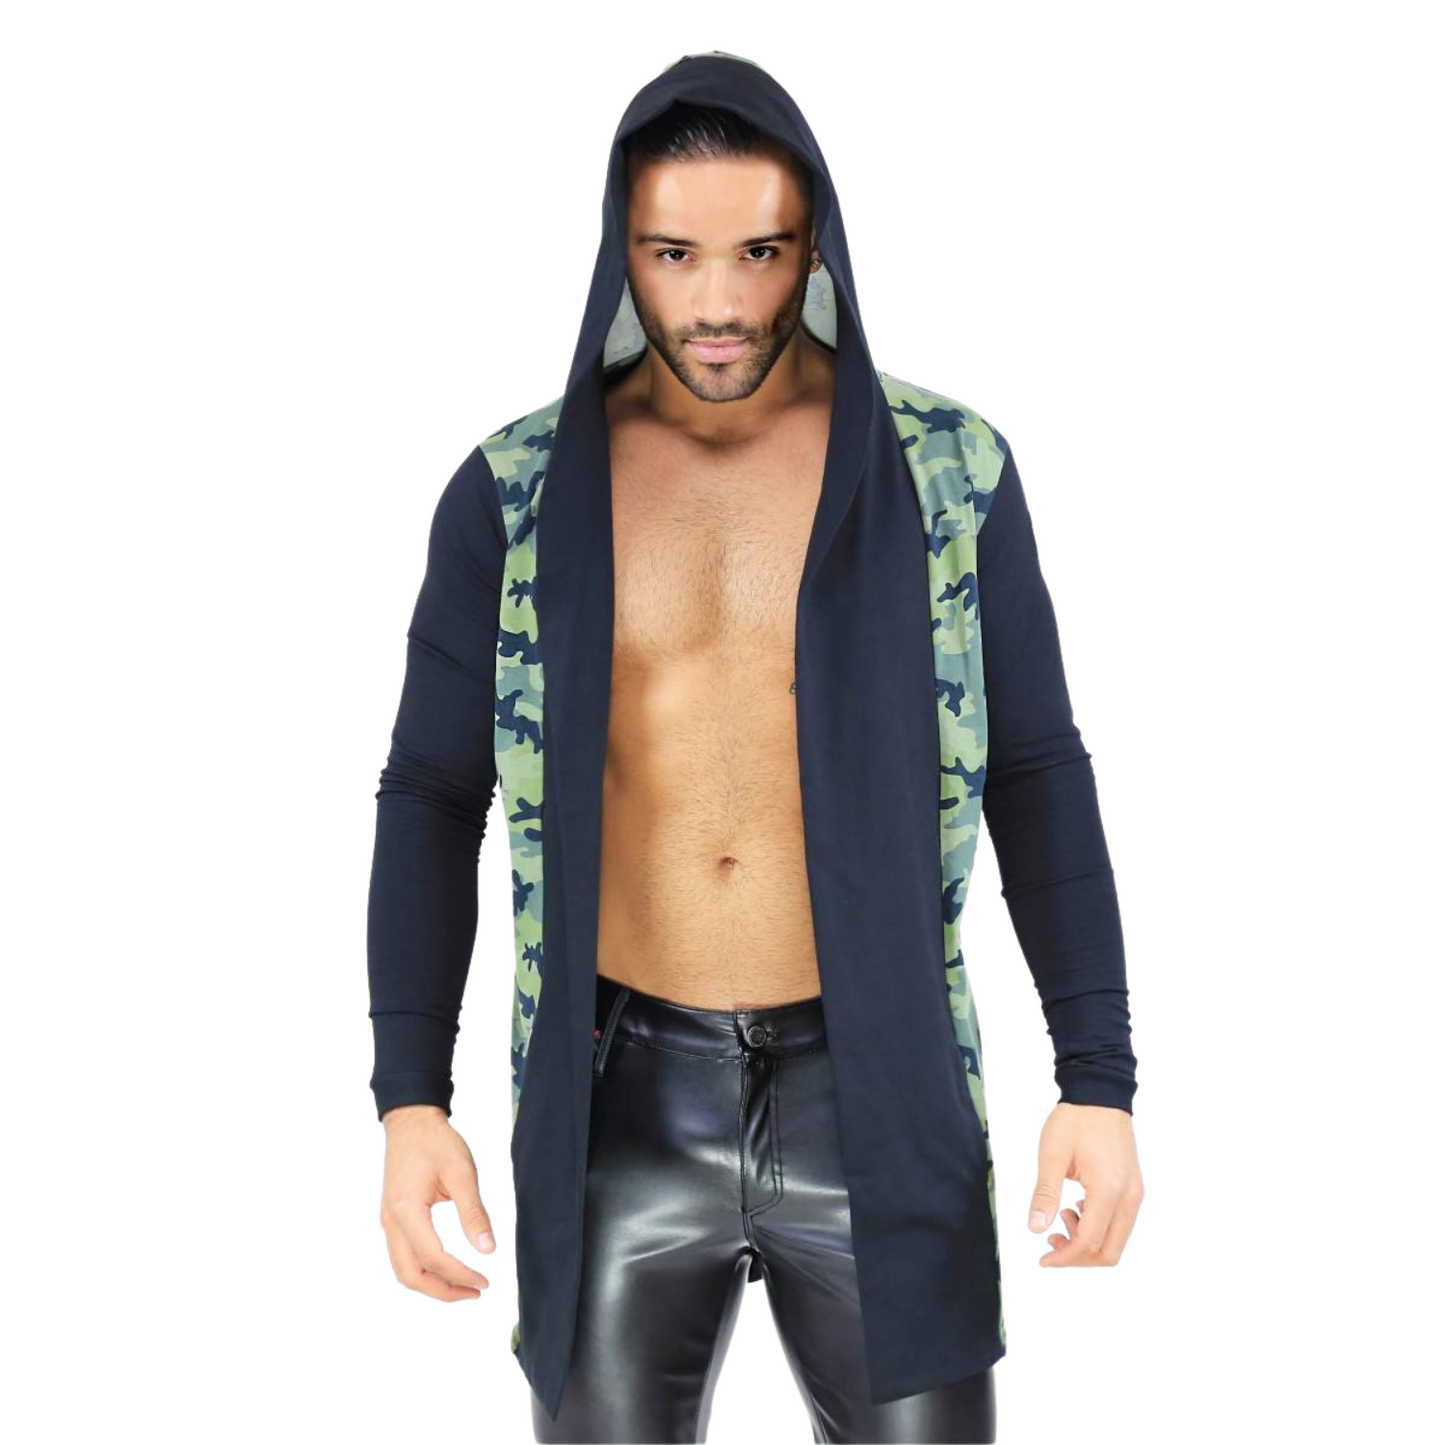 Zwarte hoodie met camouflage design ontworpen door het Franse modehuis Tof Paris en te koop bij Flavourez.